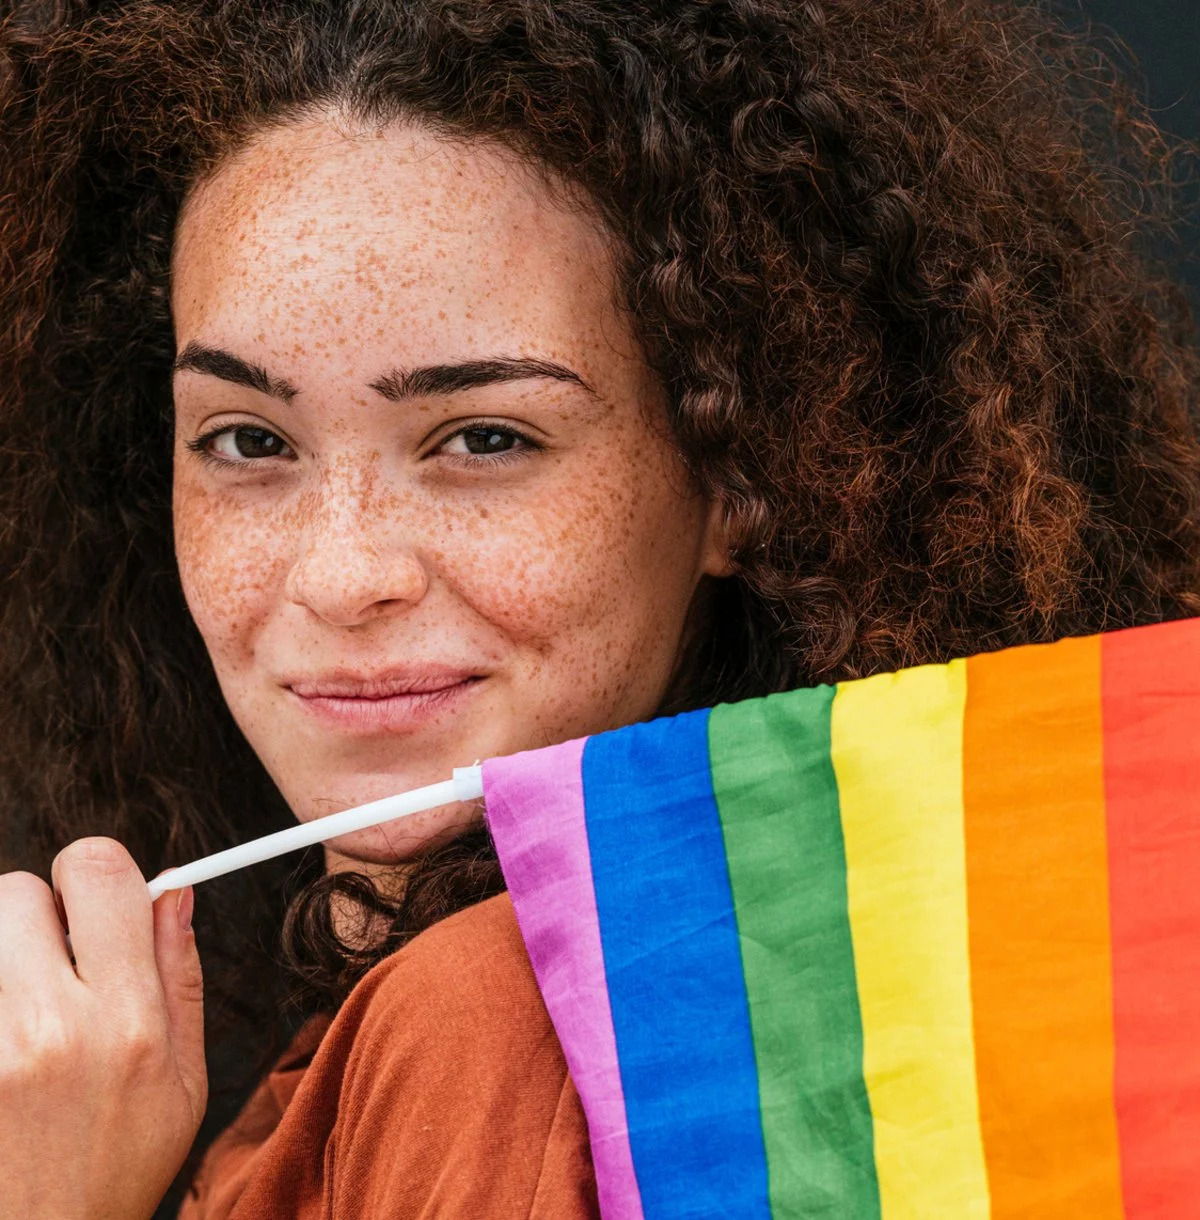 Eine Junge Frau hält eine Regenbogenflagge in der Hand